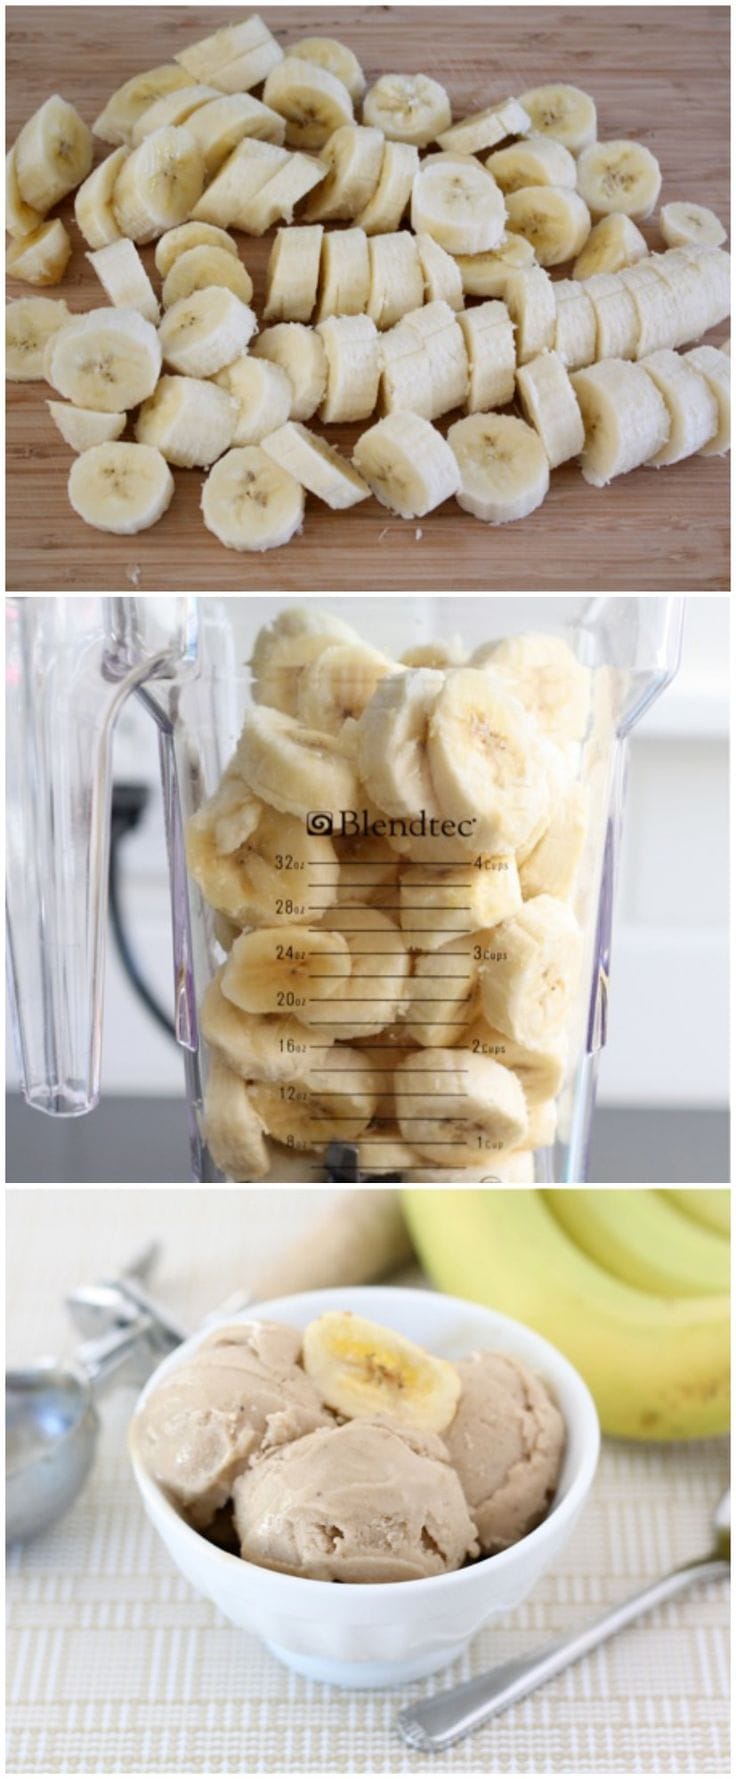 Super Simple Dessert: Banana Blender Ice Cream